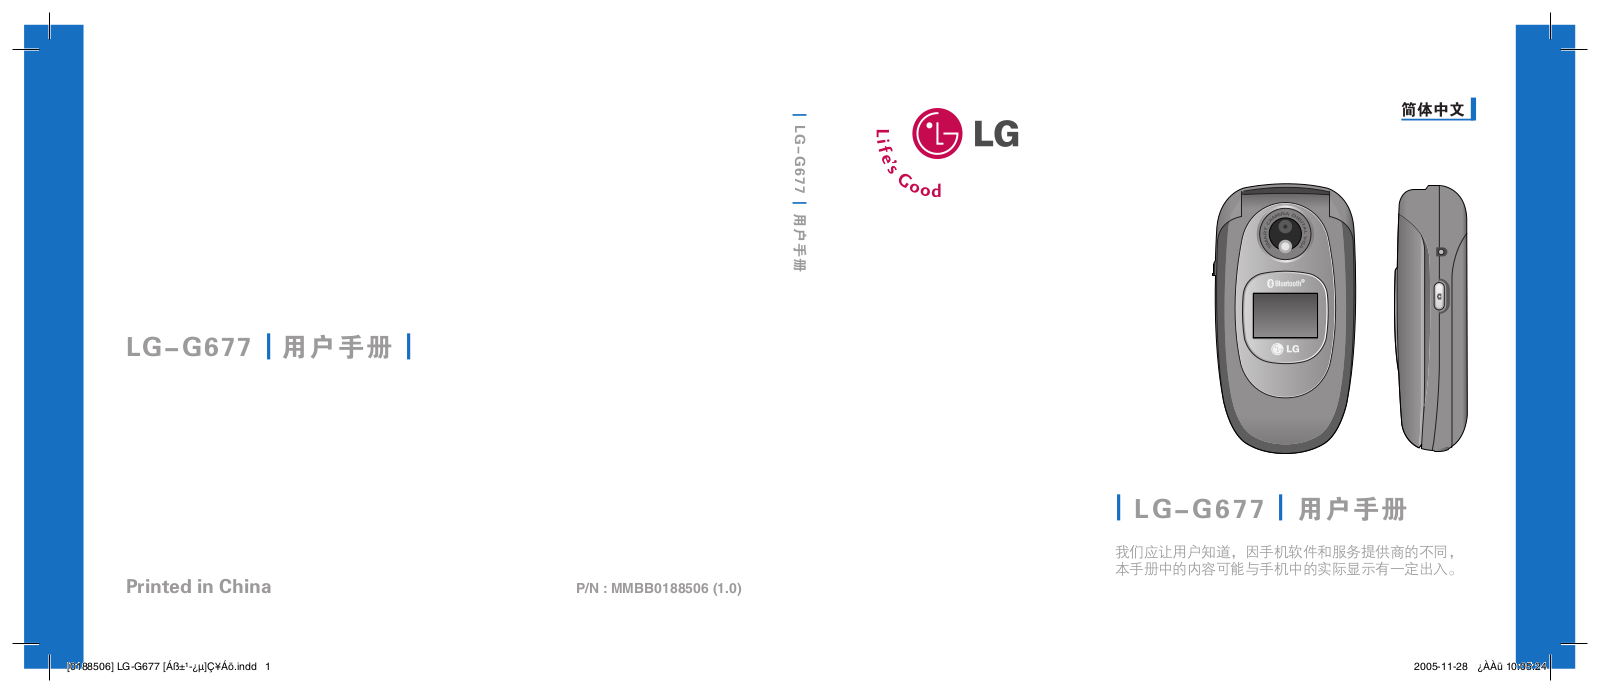 LG LG-G677 User Guide